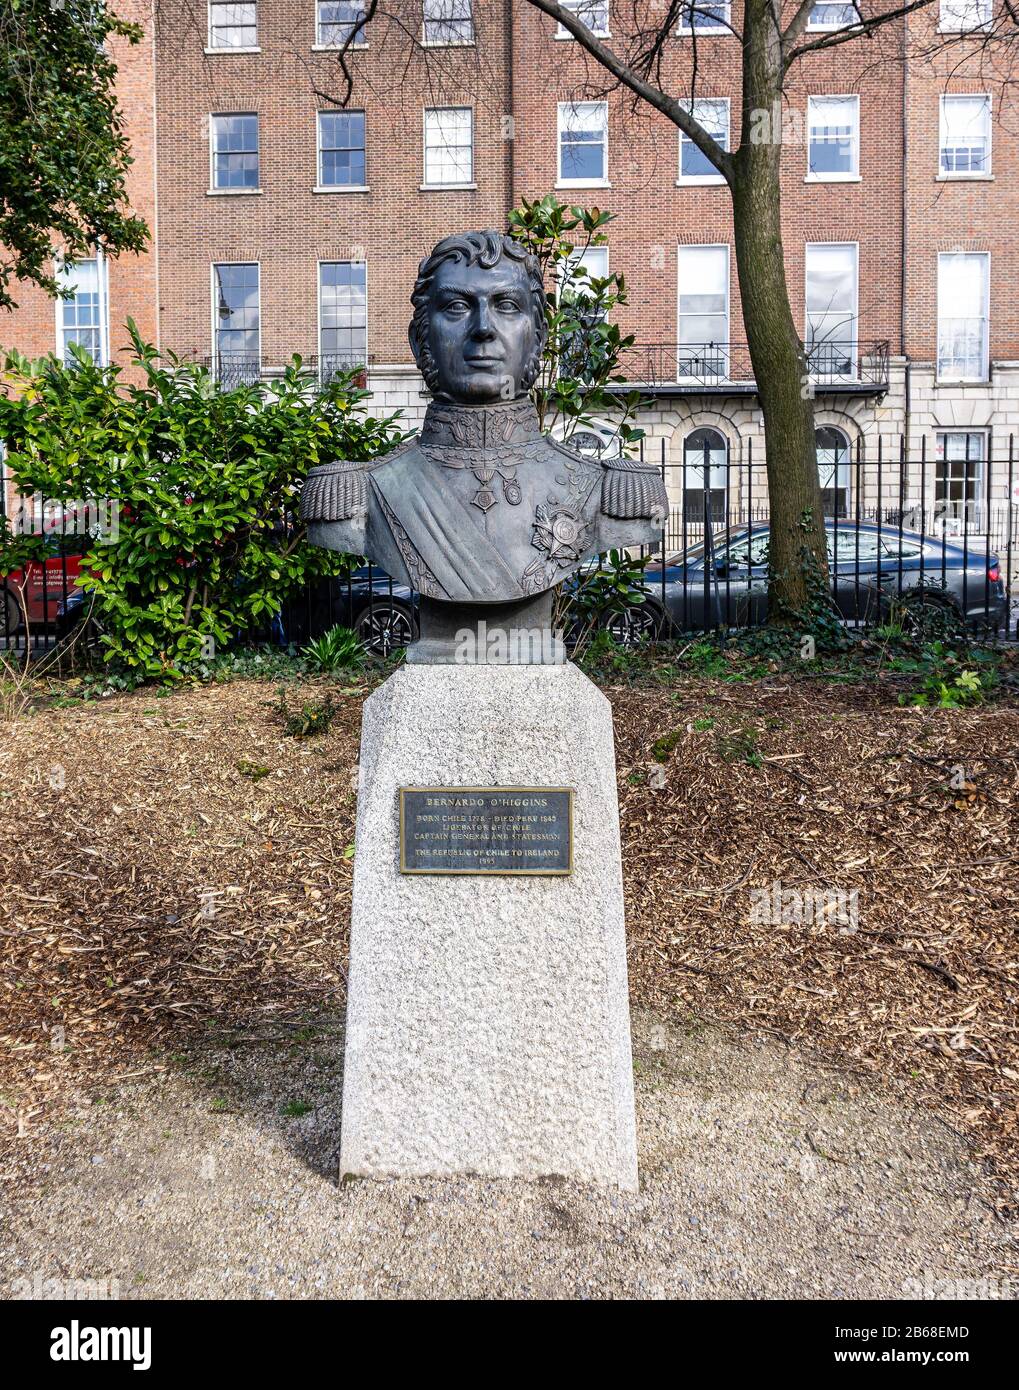 Die Statue von Bernardo O'Higgins, chilenischer Unabhängigkeitsführer irischer Abstammung, auf dem Merrion Square, Dublin, Irland. Bildhauer Francisco Orellano Pavez Stockfoto